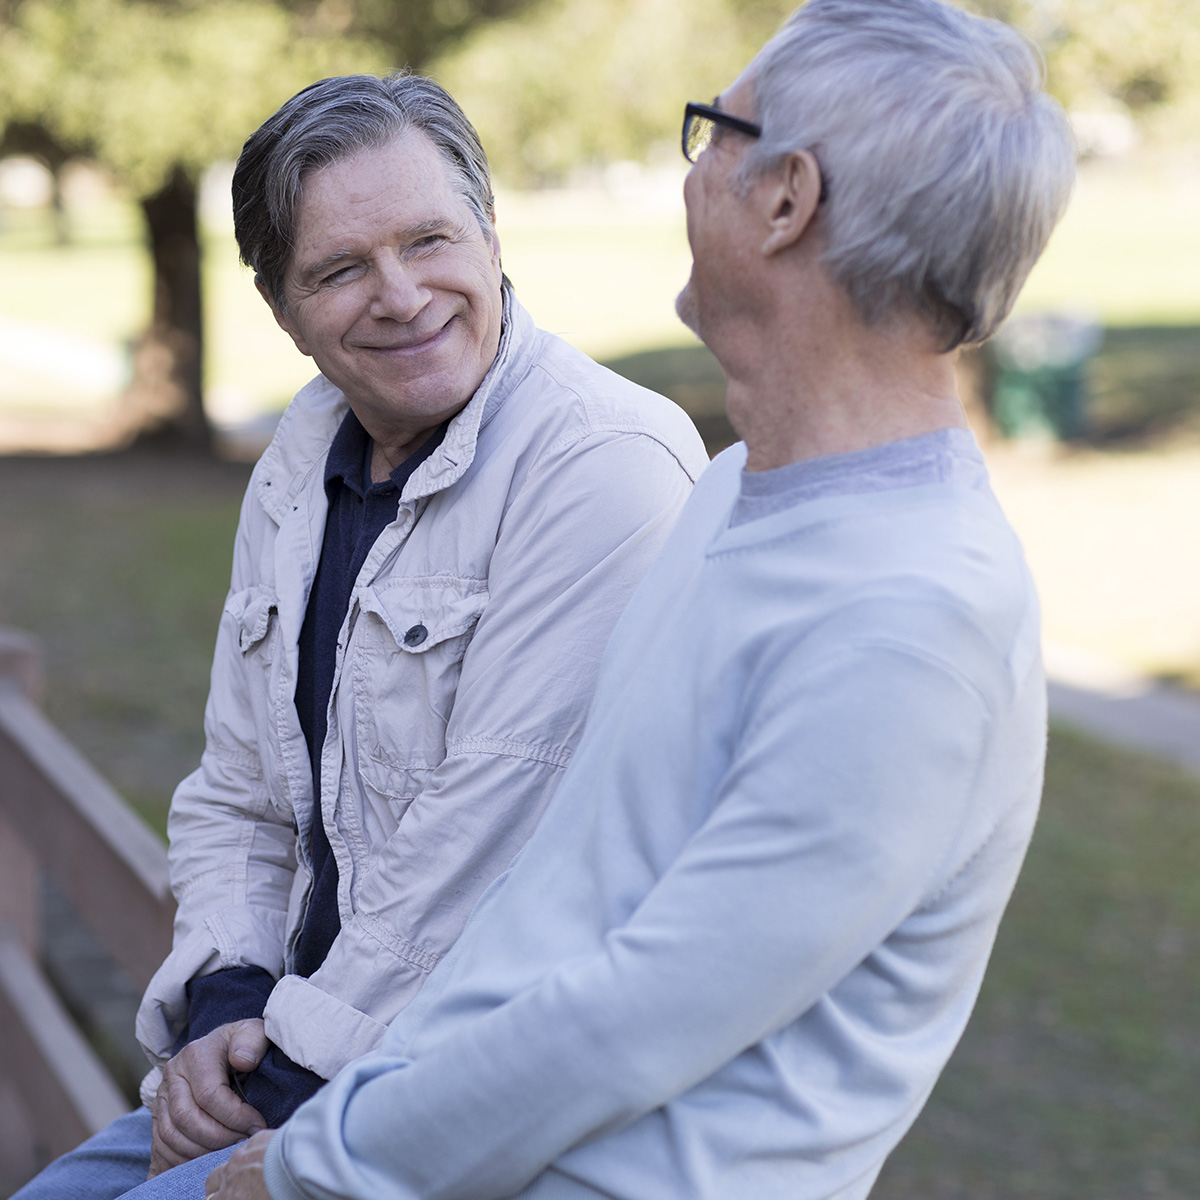 Dos hombres sentados en el banco de un parque, disfrutando de una conversación en mutua compañía.